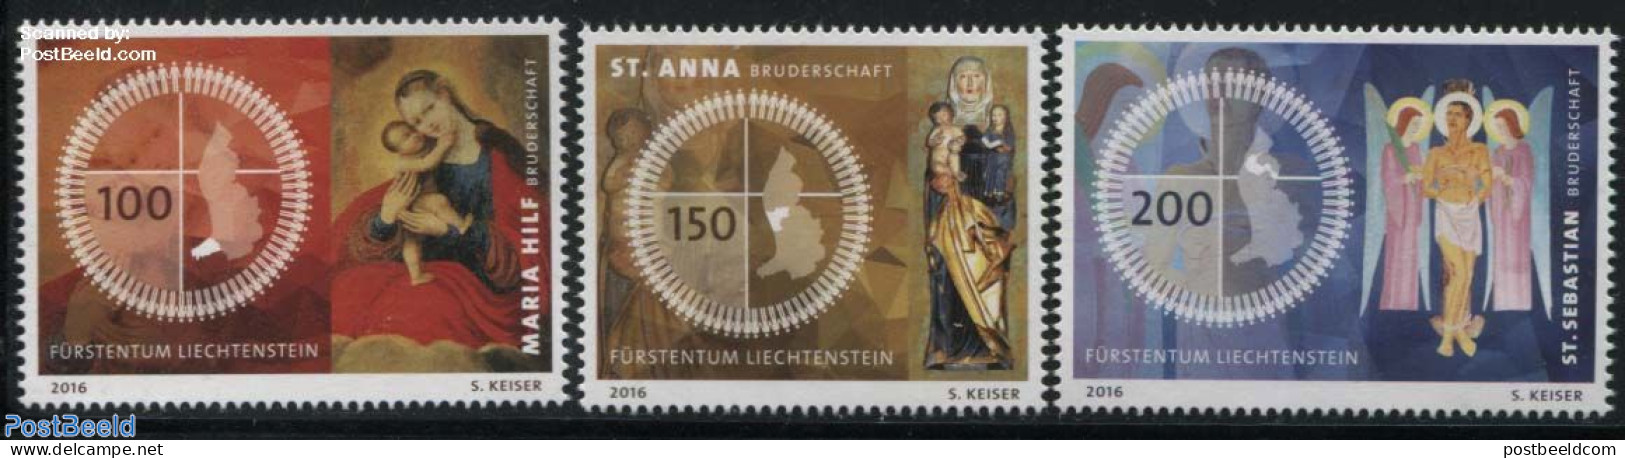 Liechtenstein 2016 Fraternities In Liechtenstein 3v, Mint NH, Religion - Various - Religion - Maps - Nuovi